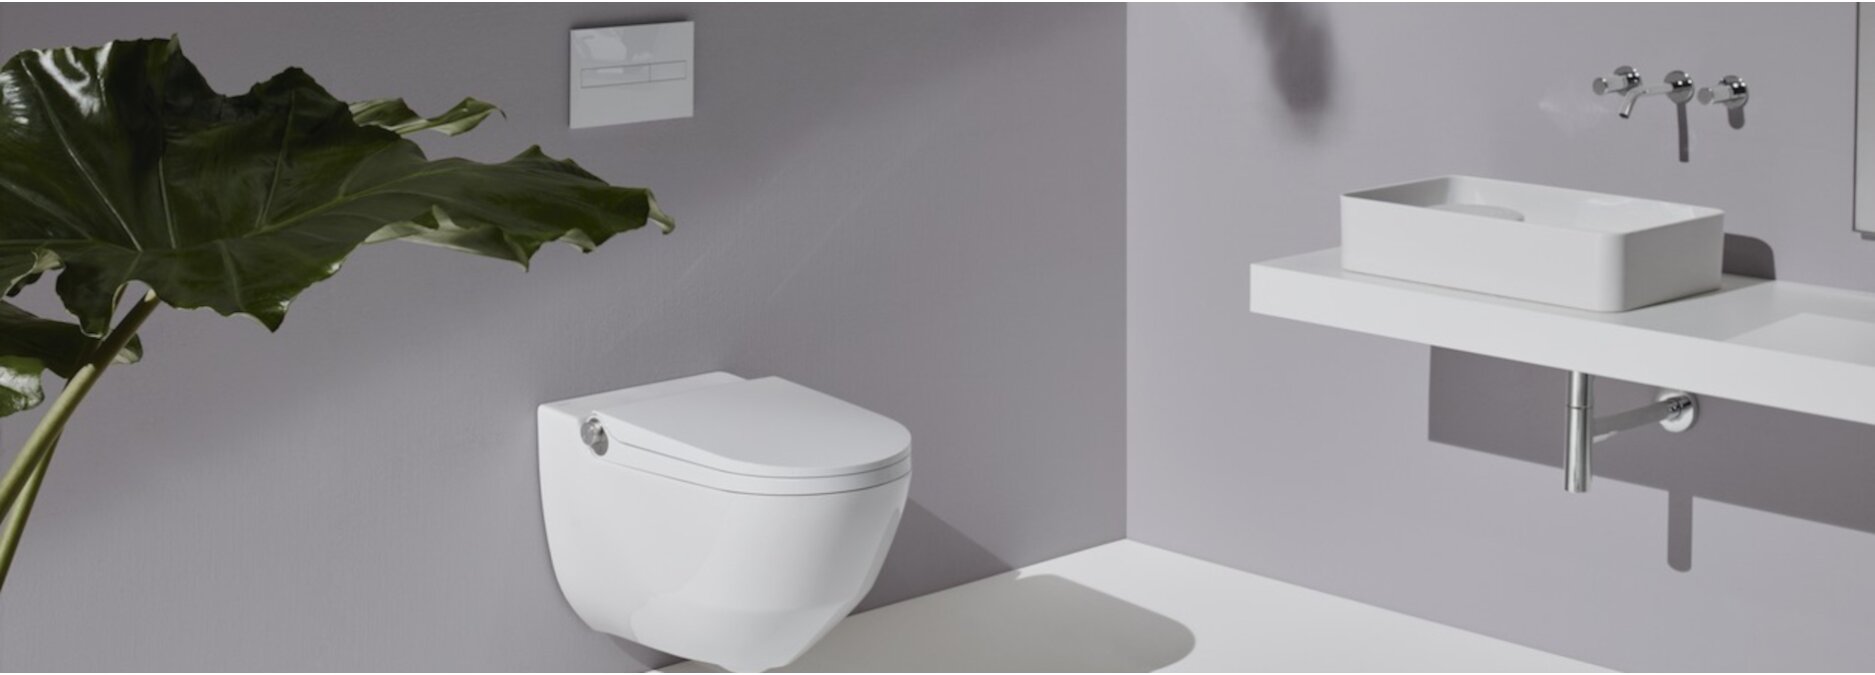 Wie sinnvoll ist ein Dusch-WC? Wir stellen die Toiletten mit Sonderfunktion vor! - Vor- &amp; Nachteile Dusch-WC | Blog ssd-armaturenshop.de